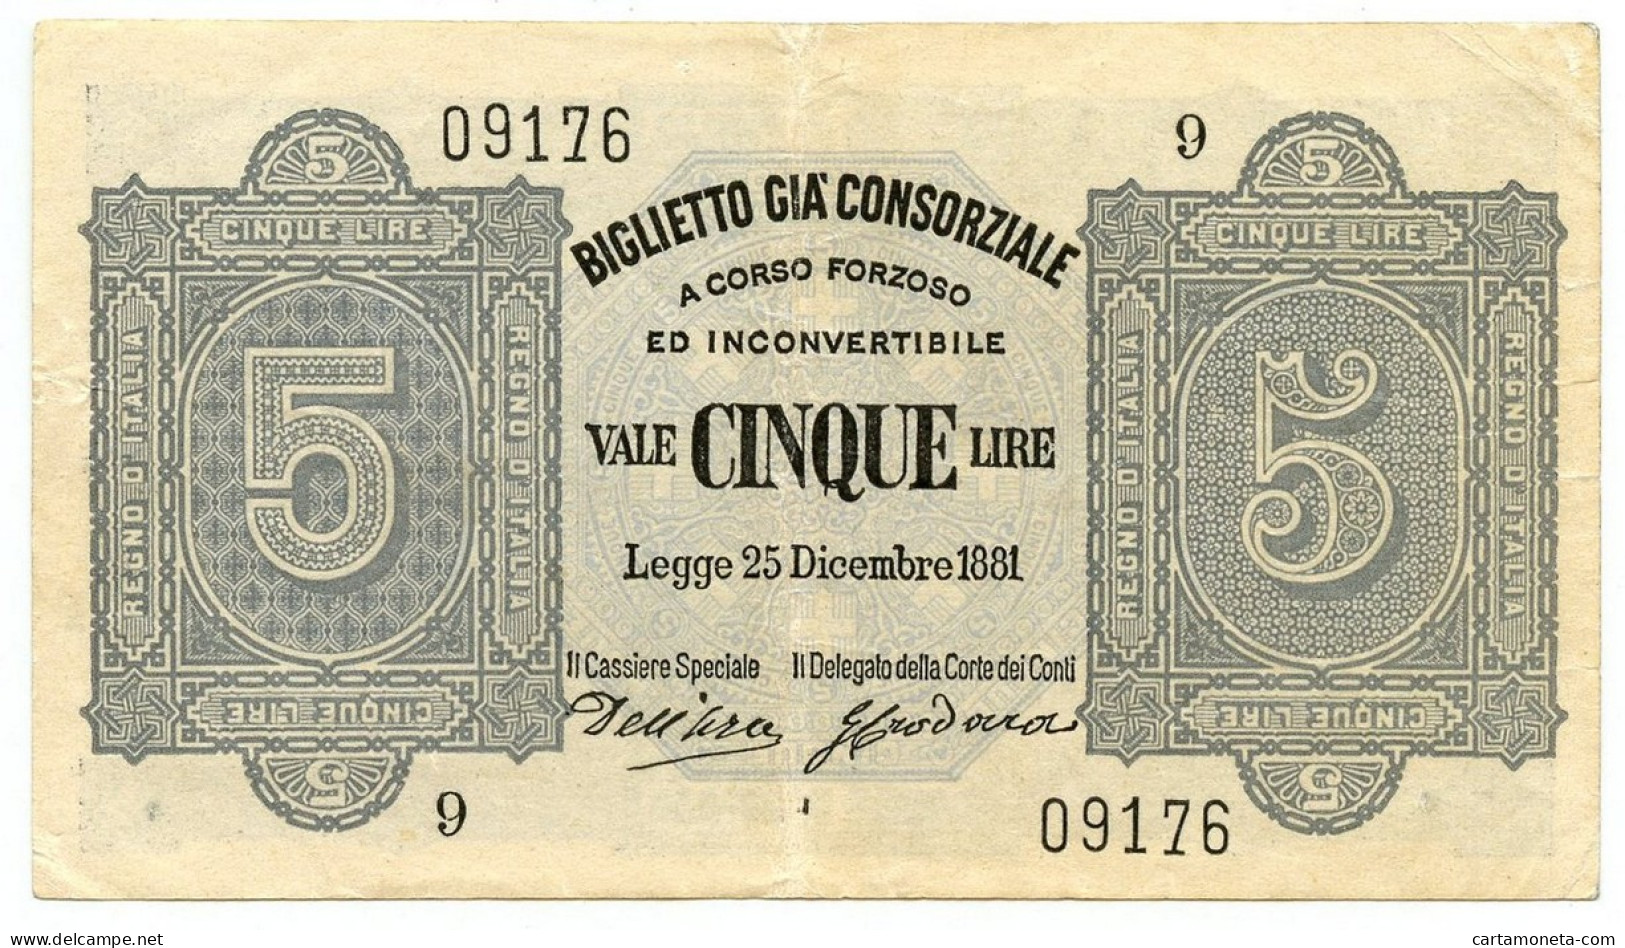 5 LIRE BIGLIETTO GIÀ CONSORZIALE REGNO D'ITALIA 25/12/1881 BB/SPL - Biglietti Gia Consorziale